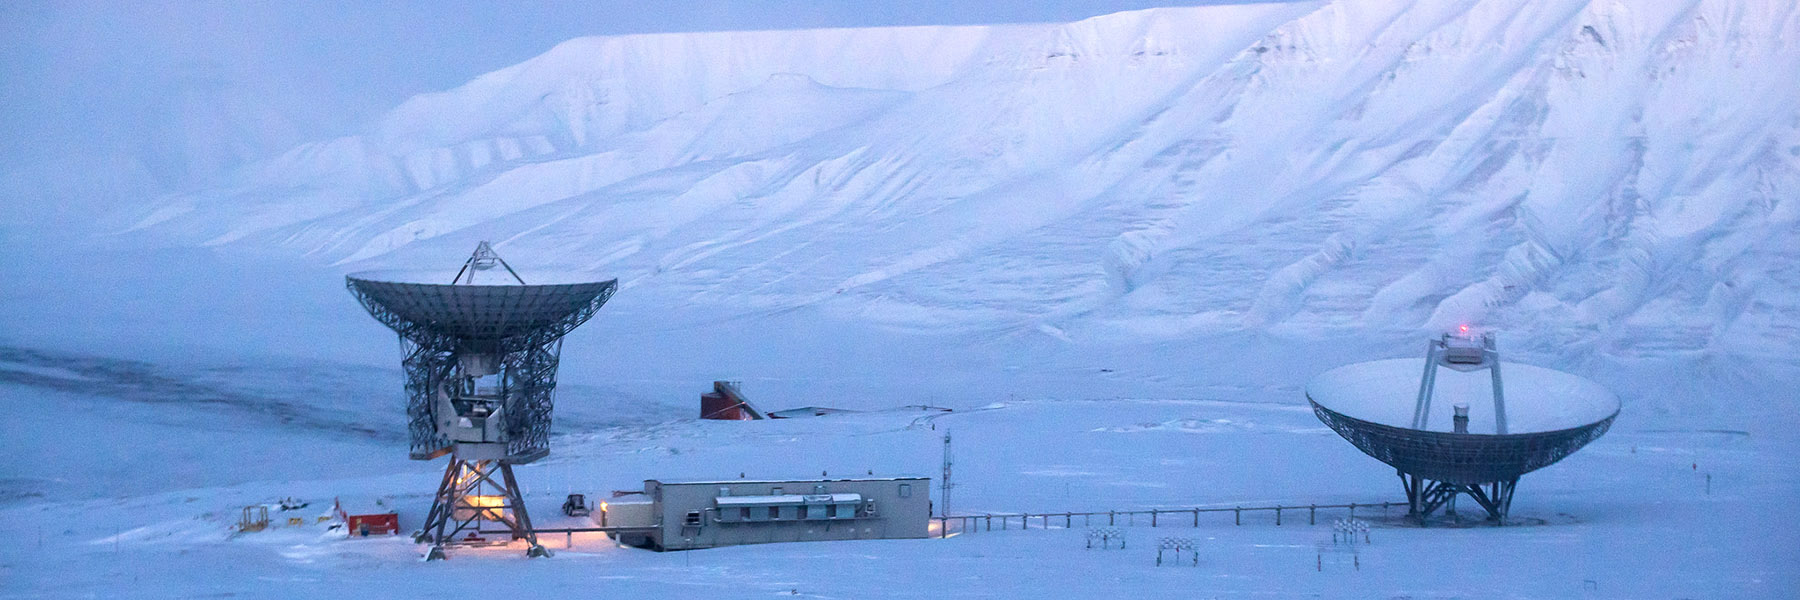 Svalbard EISCAT antenna